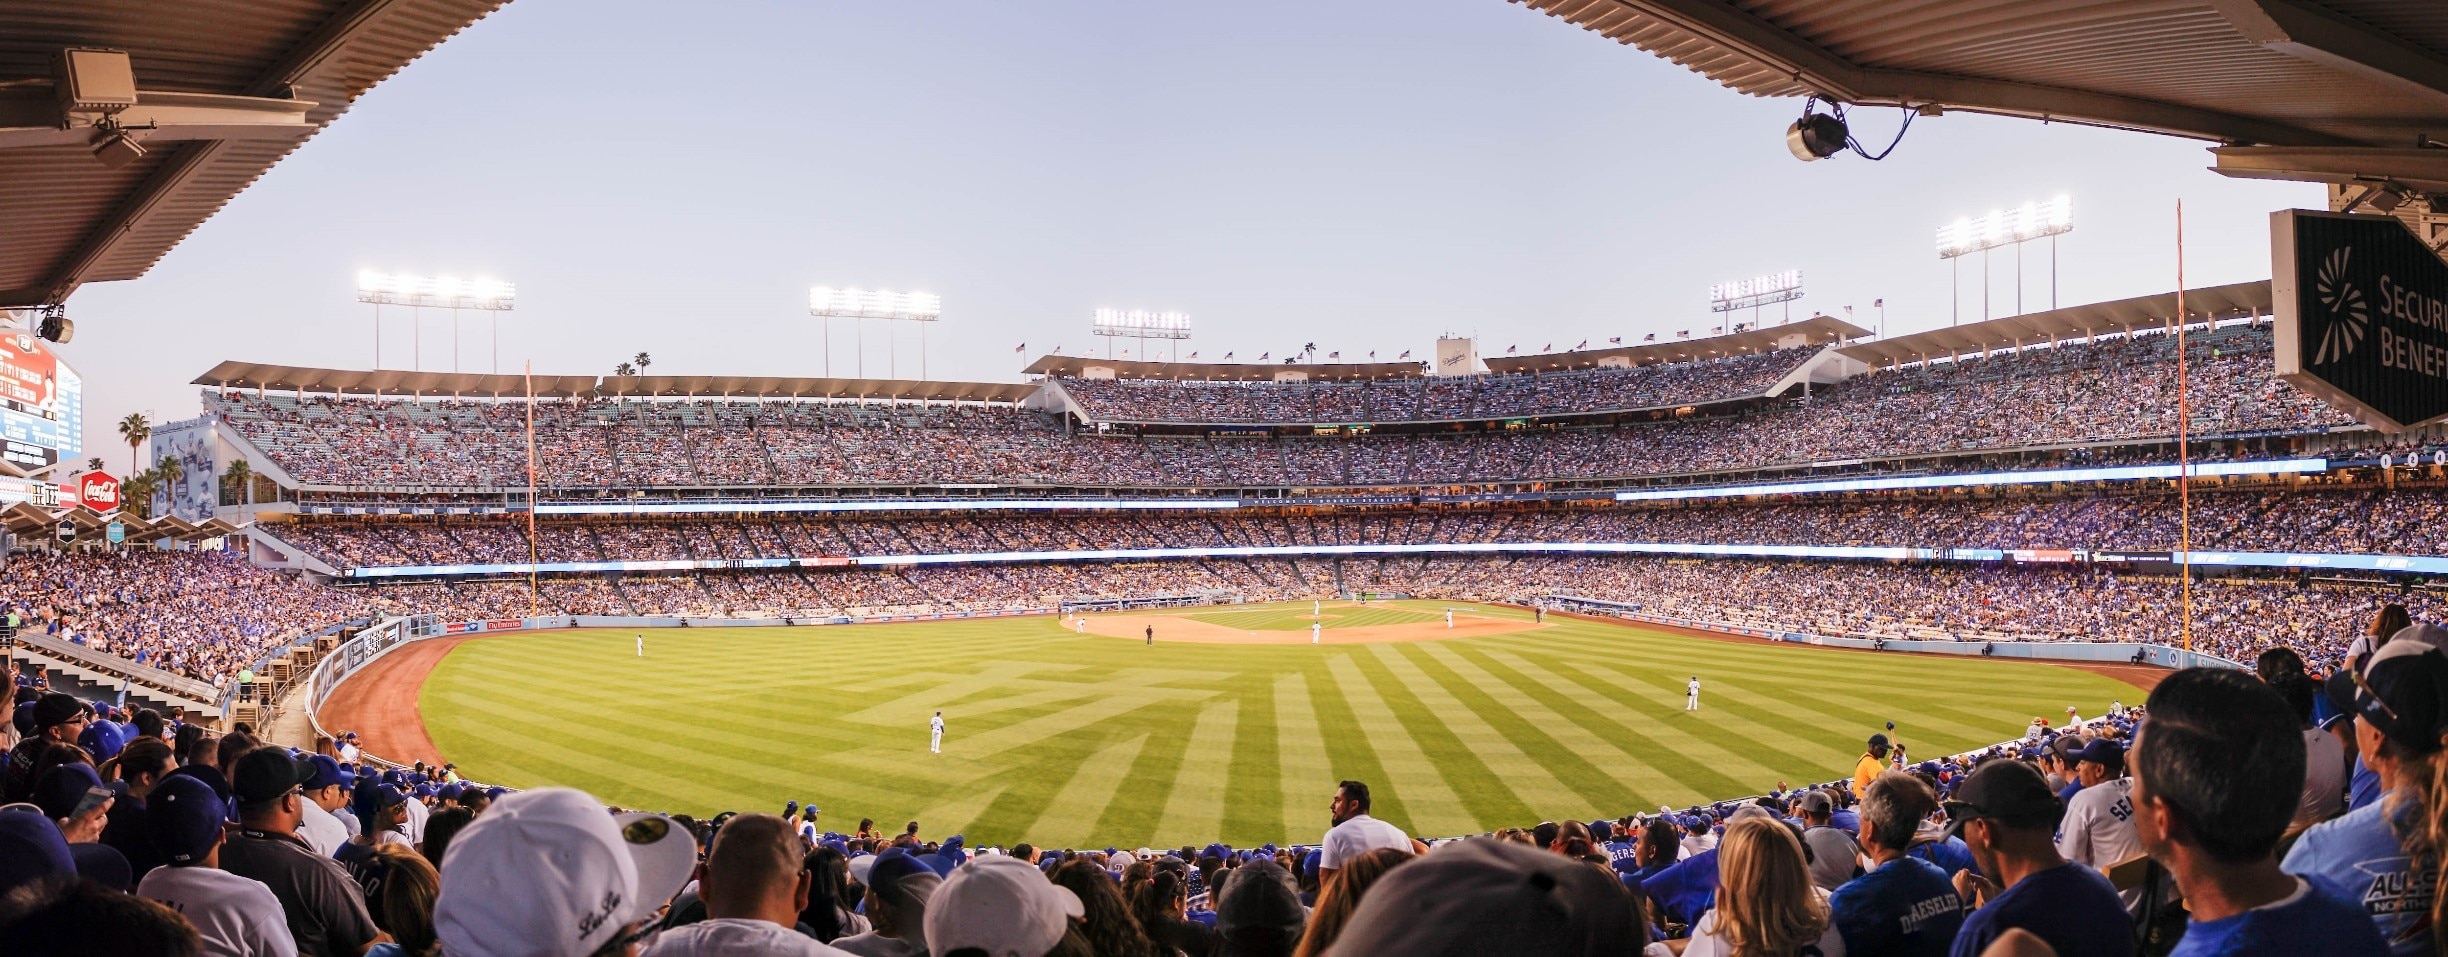 Visit Dodger Stadium in Los Angeles | Expedia